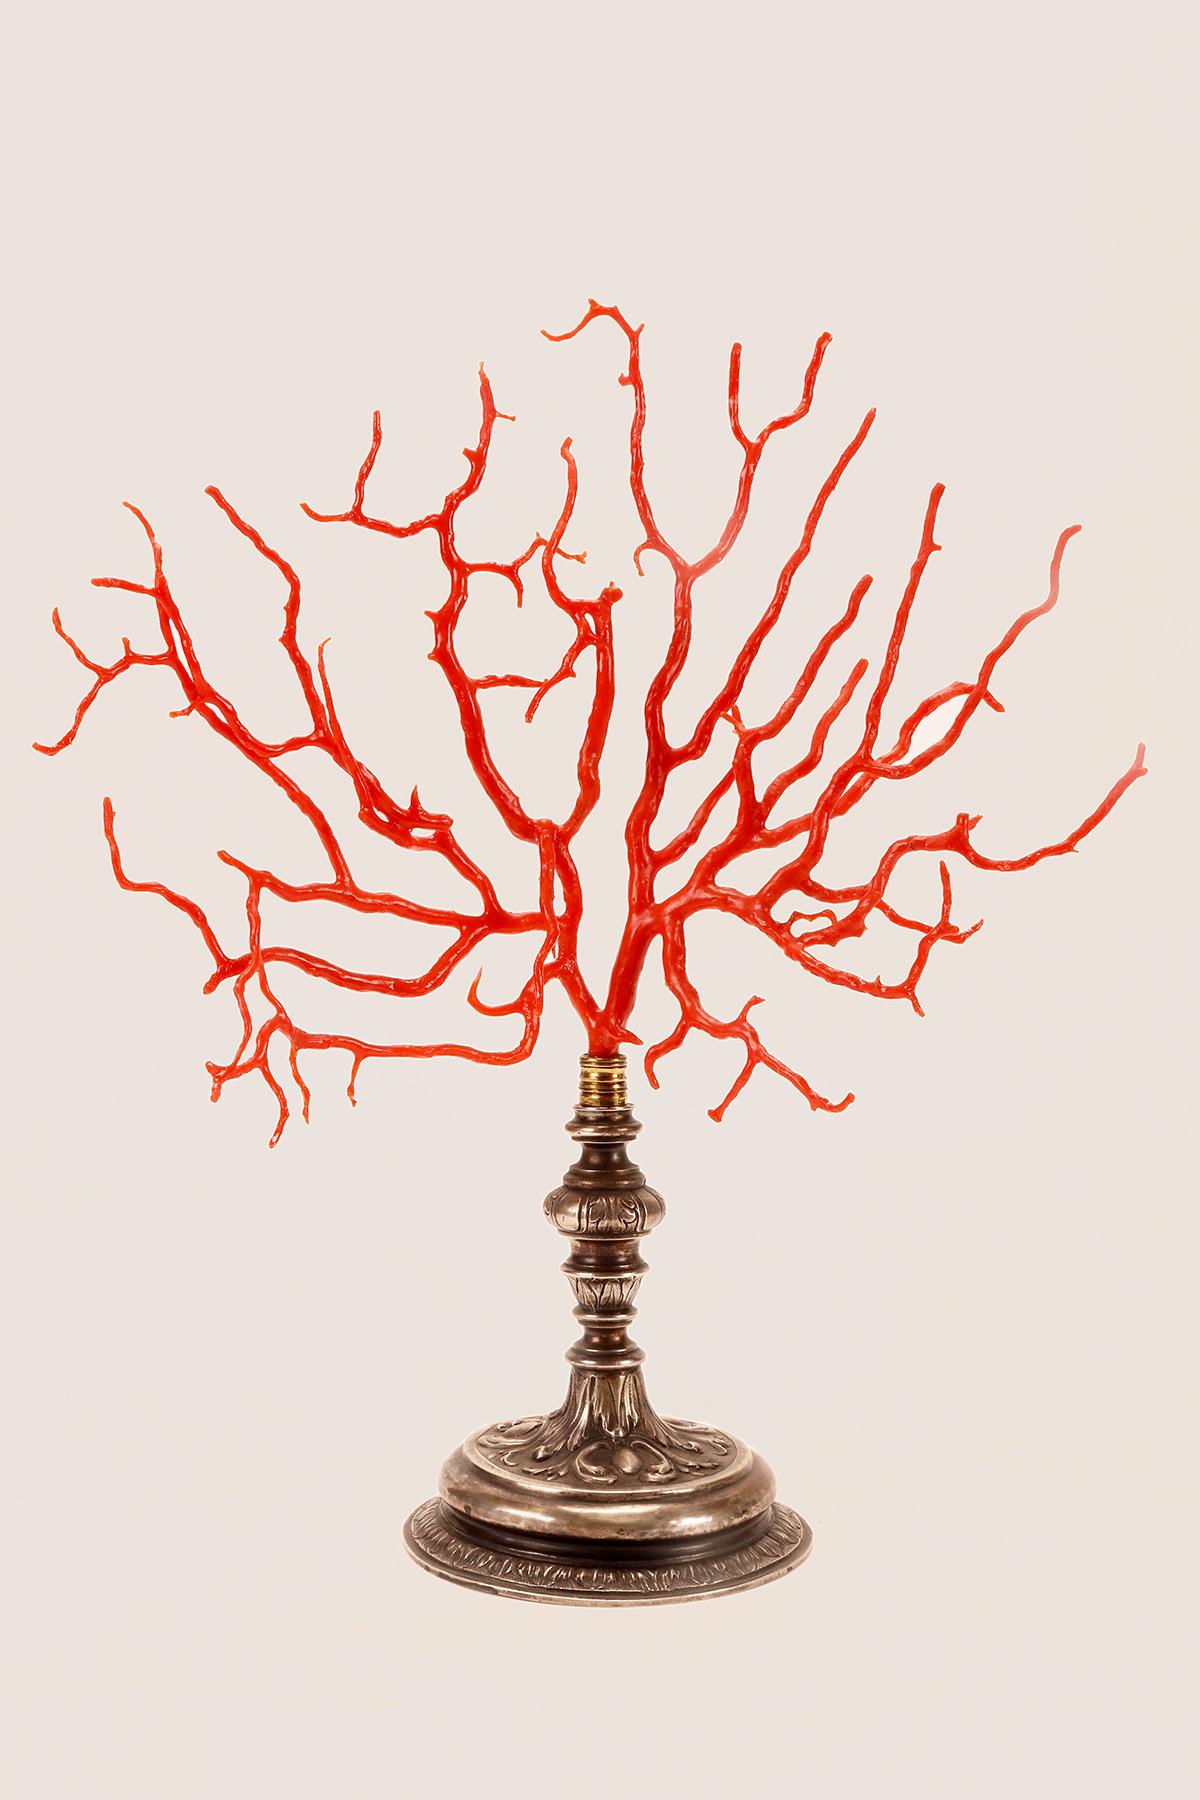 Ein großer mediterraner roter Korallenast (Corallium Rubrum).
Der Sockel ist aus Silber, getrieben, Italien, frühes 19. Jahrhundert.